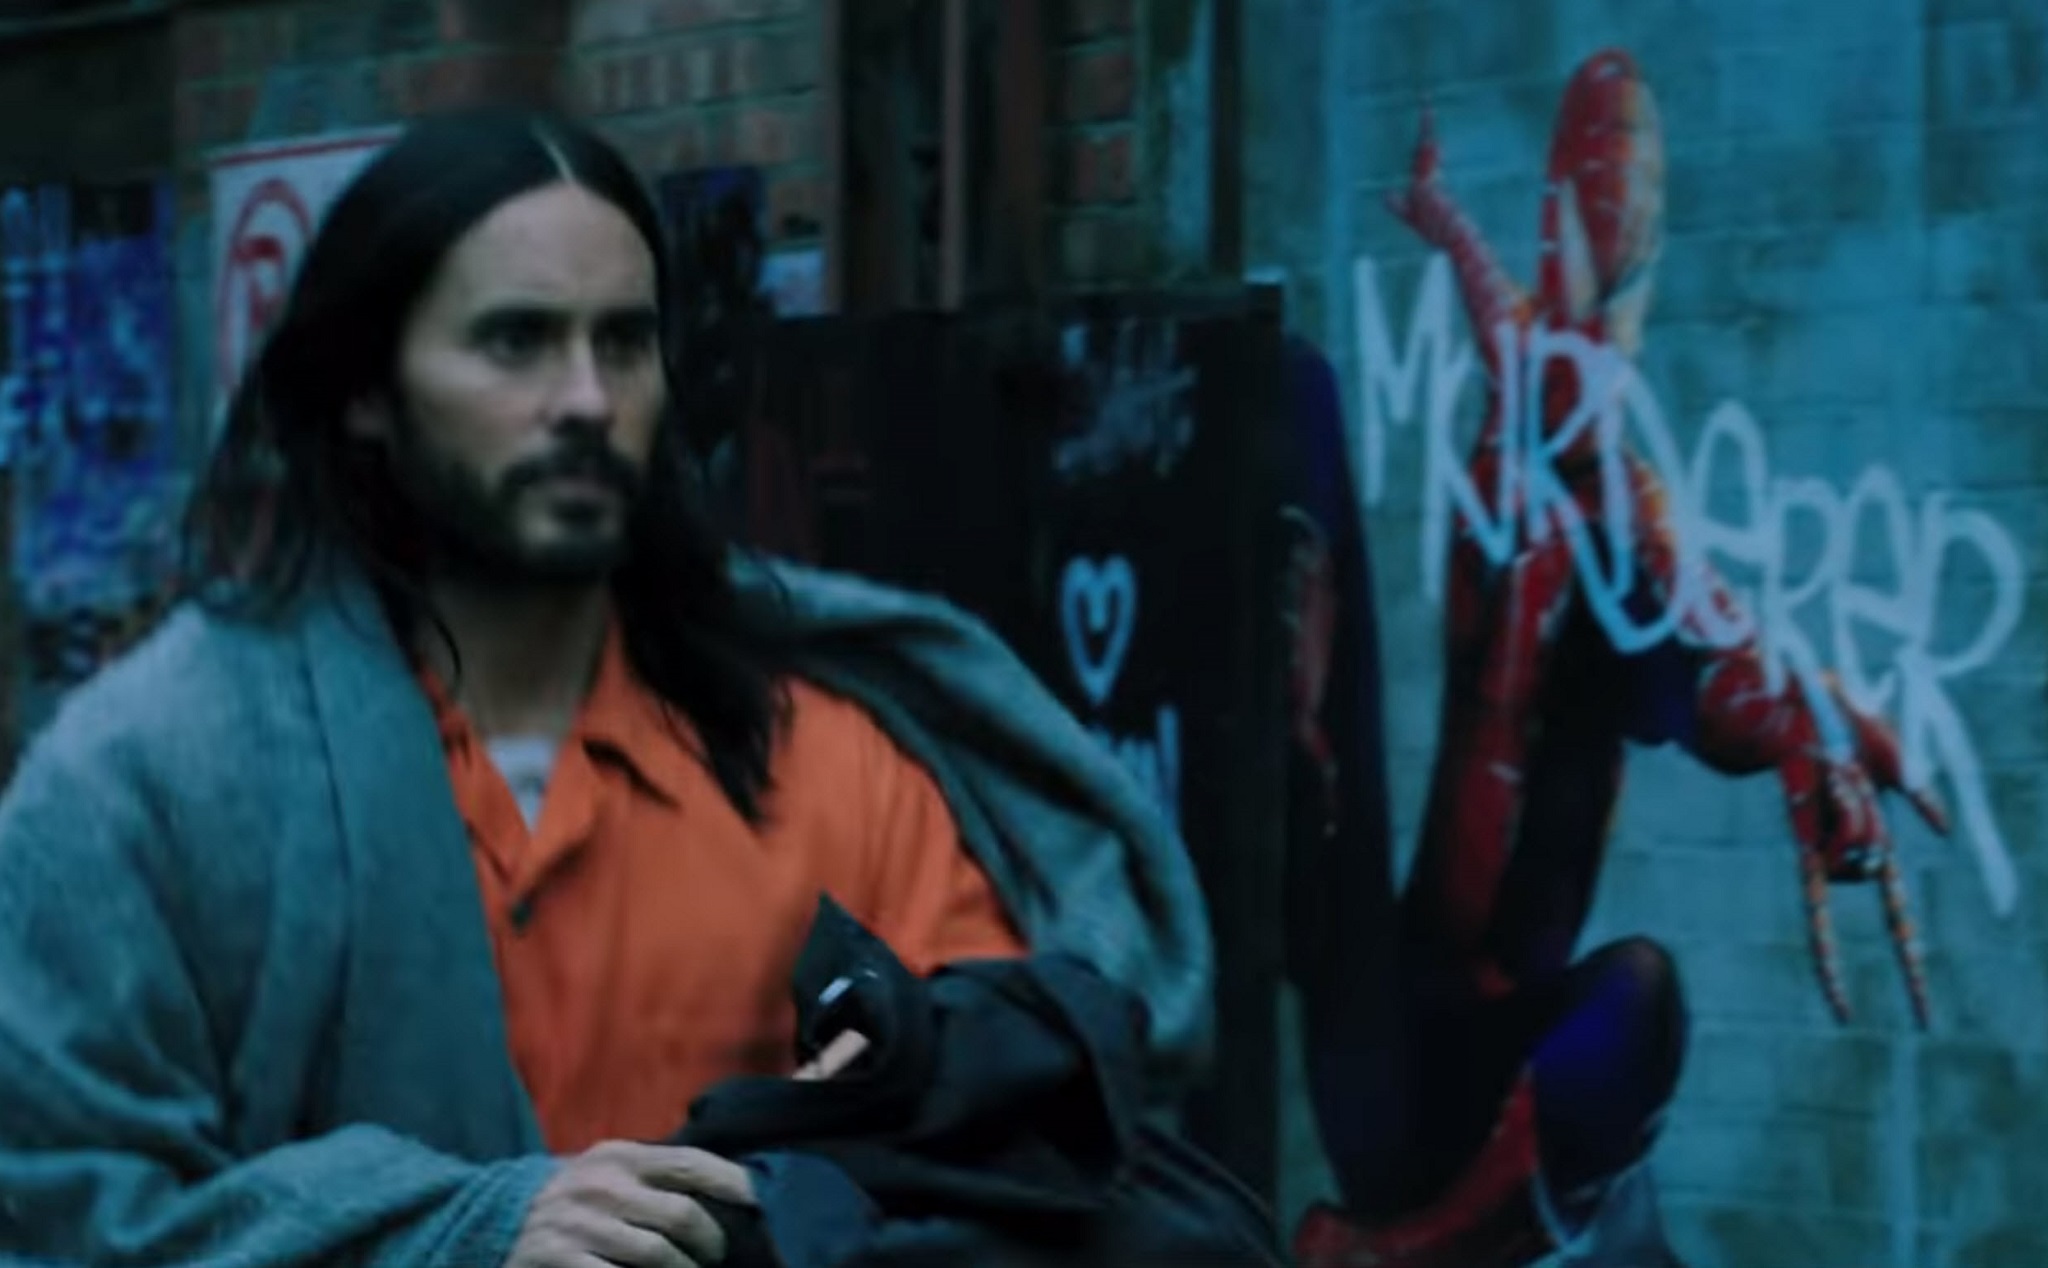 [Phim] Mời xem trailer Morbius: Đối thủ tiếp theo của Spider-Man lên phim sau Venom